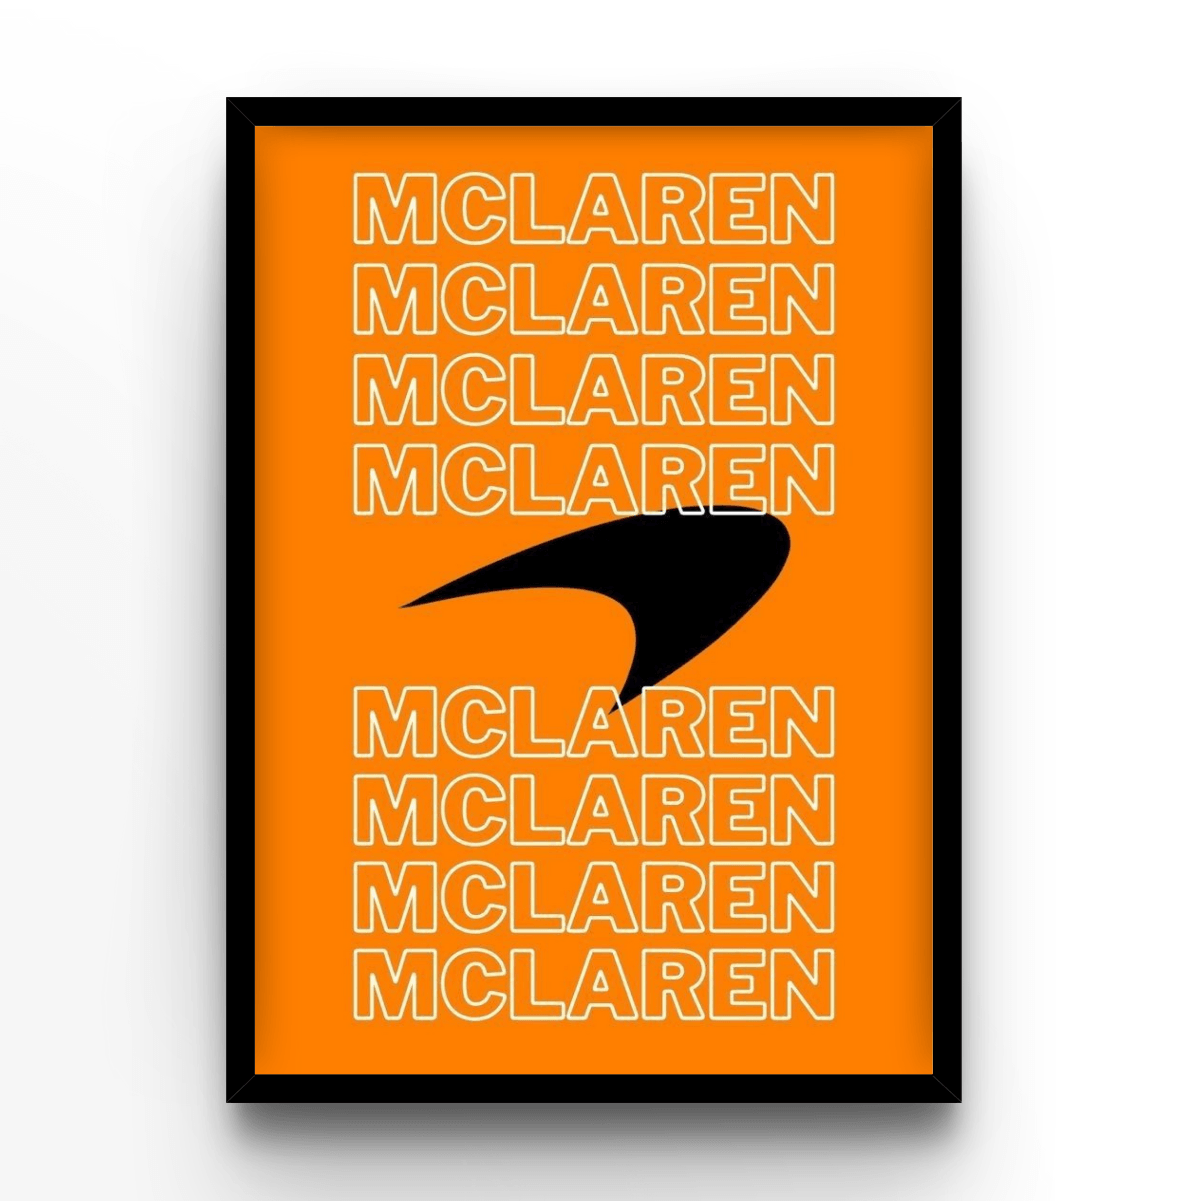 McLaren - A4, A3, A2 Posters Base - Poster Print Shop / Art Prints / PostersBase